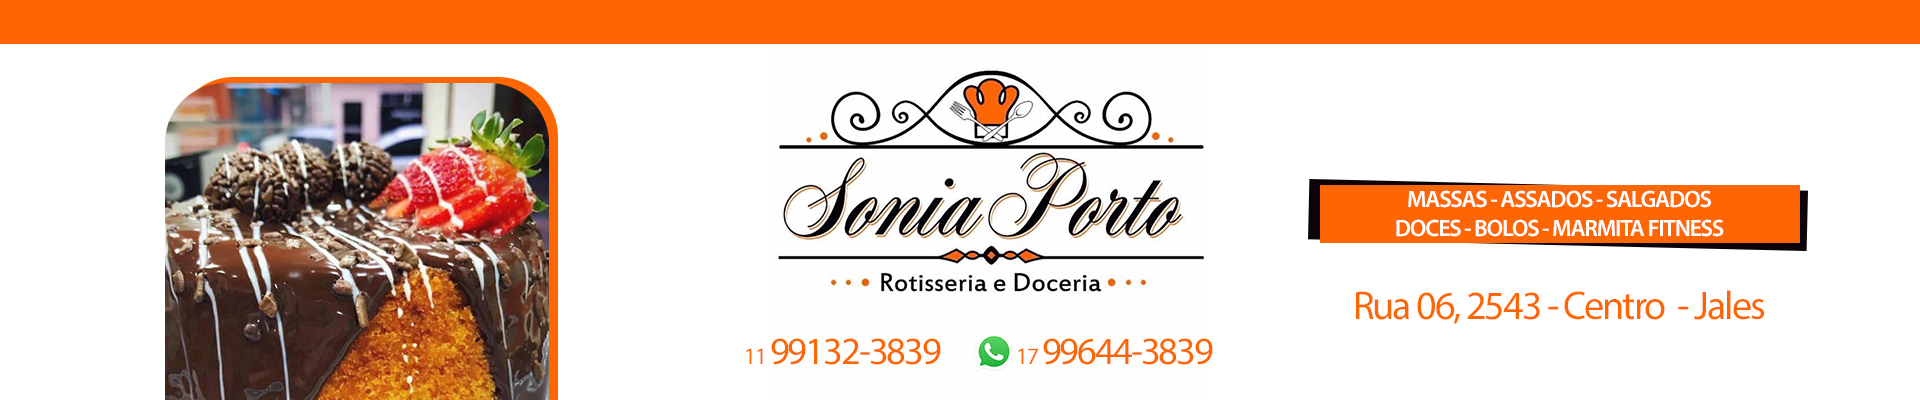 Sonia Porto - Rotisseria e Doceria